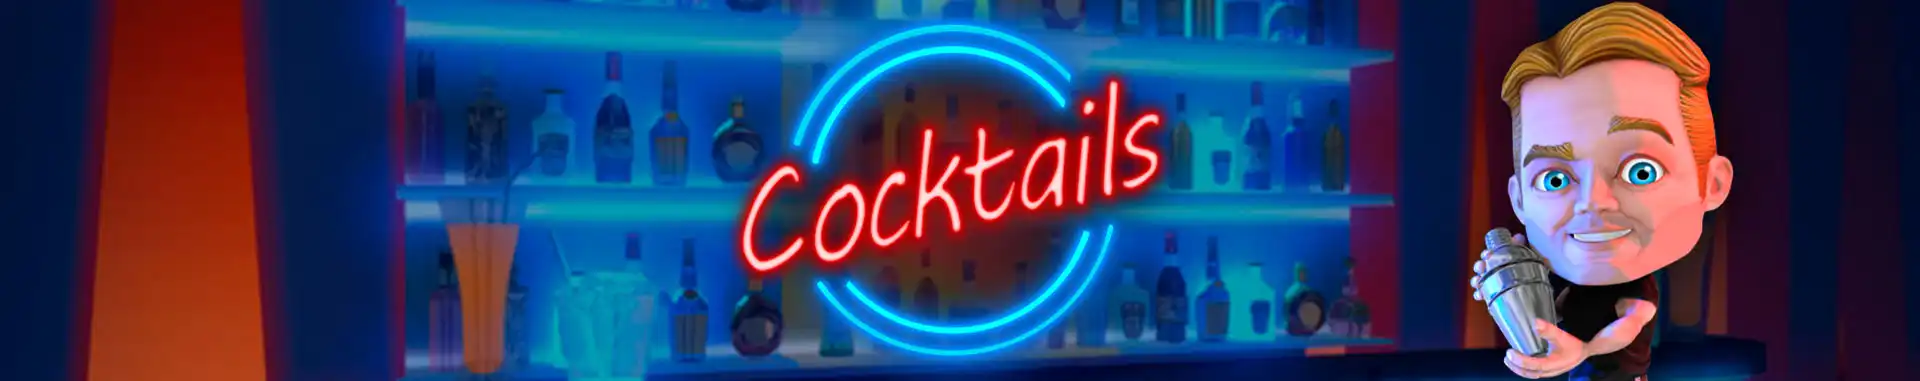 Video Bingo Online Cocktails